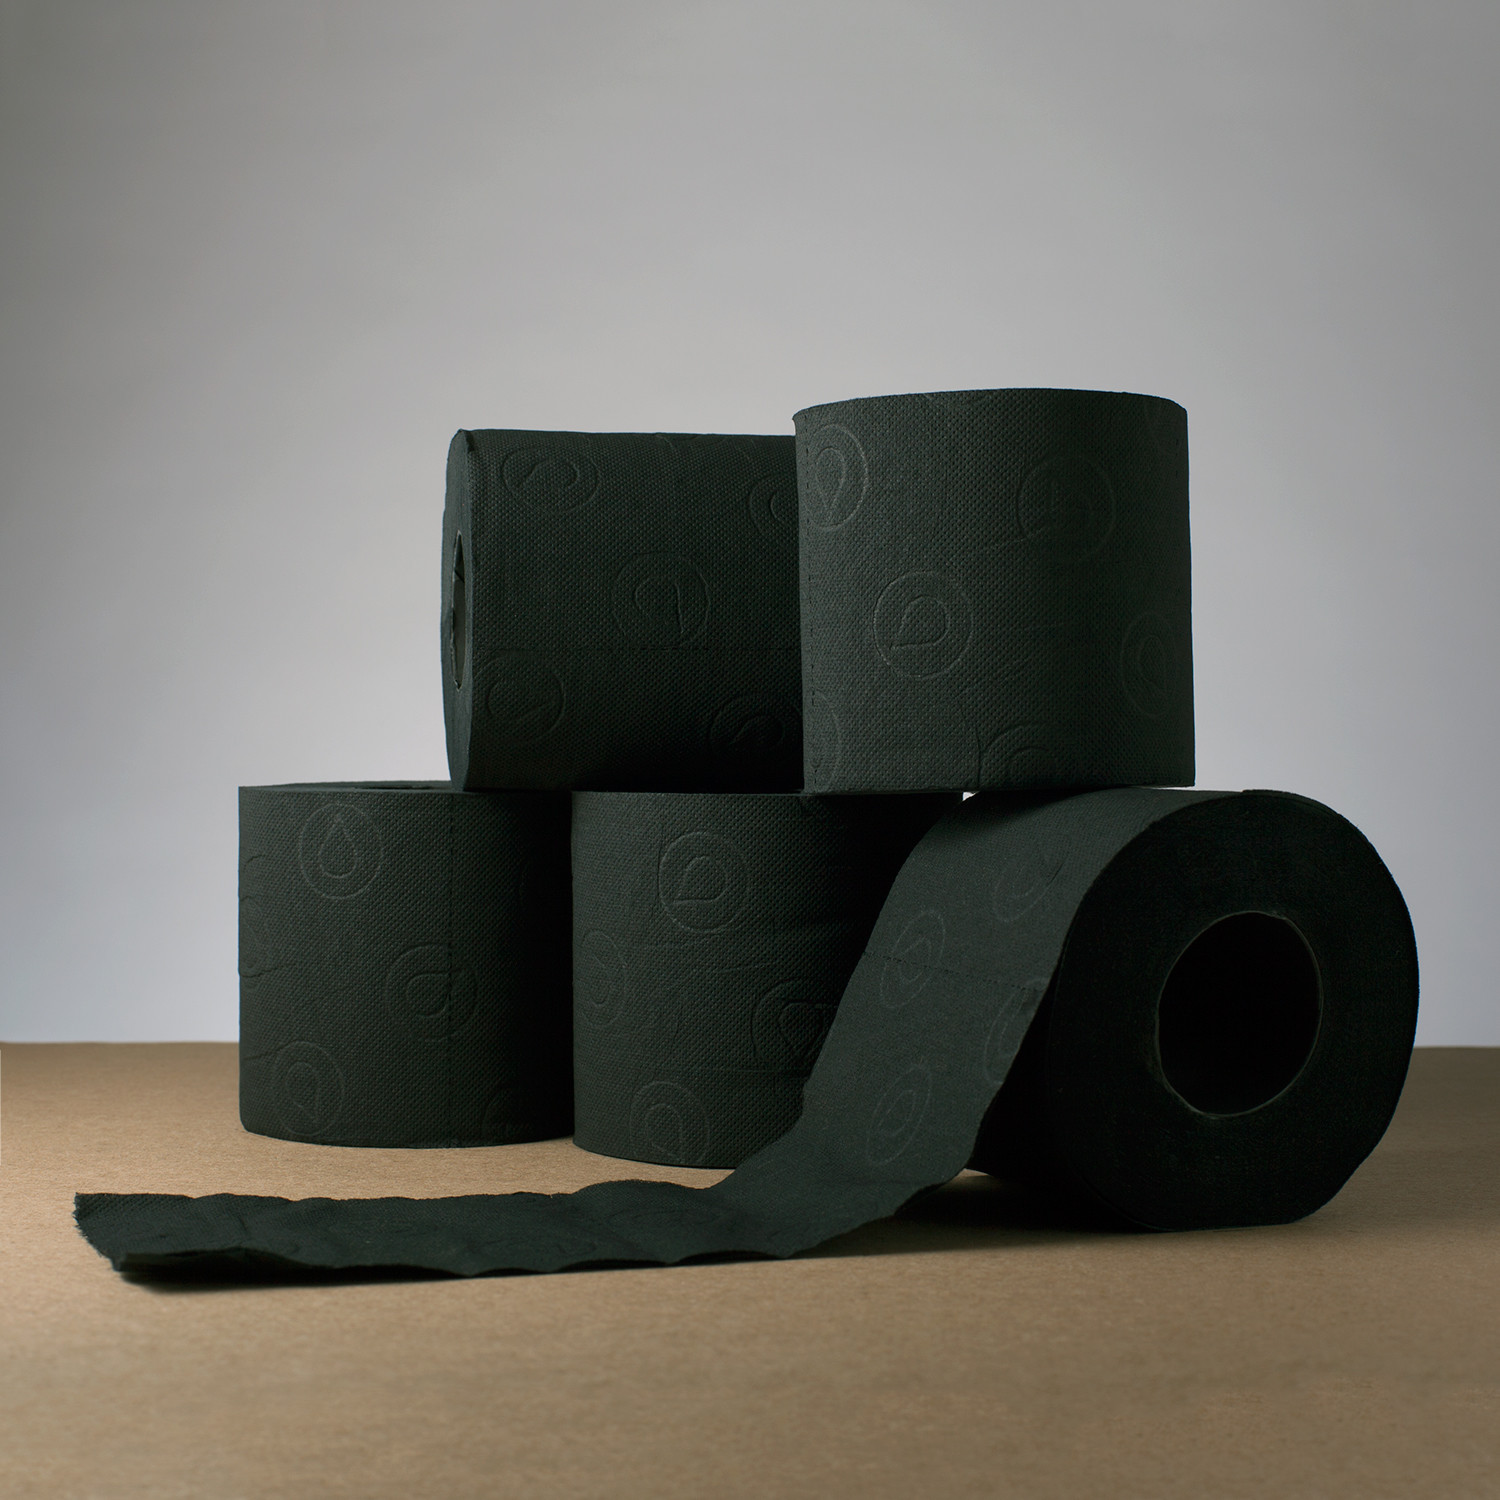  Renova Black Toilet Paper - 6 rolls : Home & Kitchen